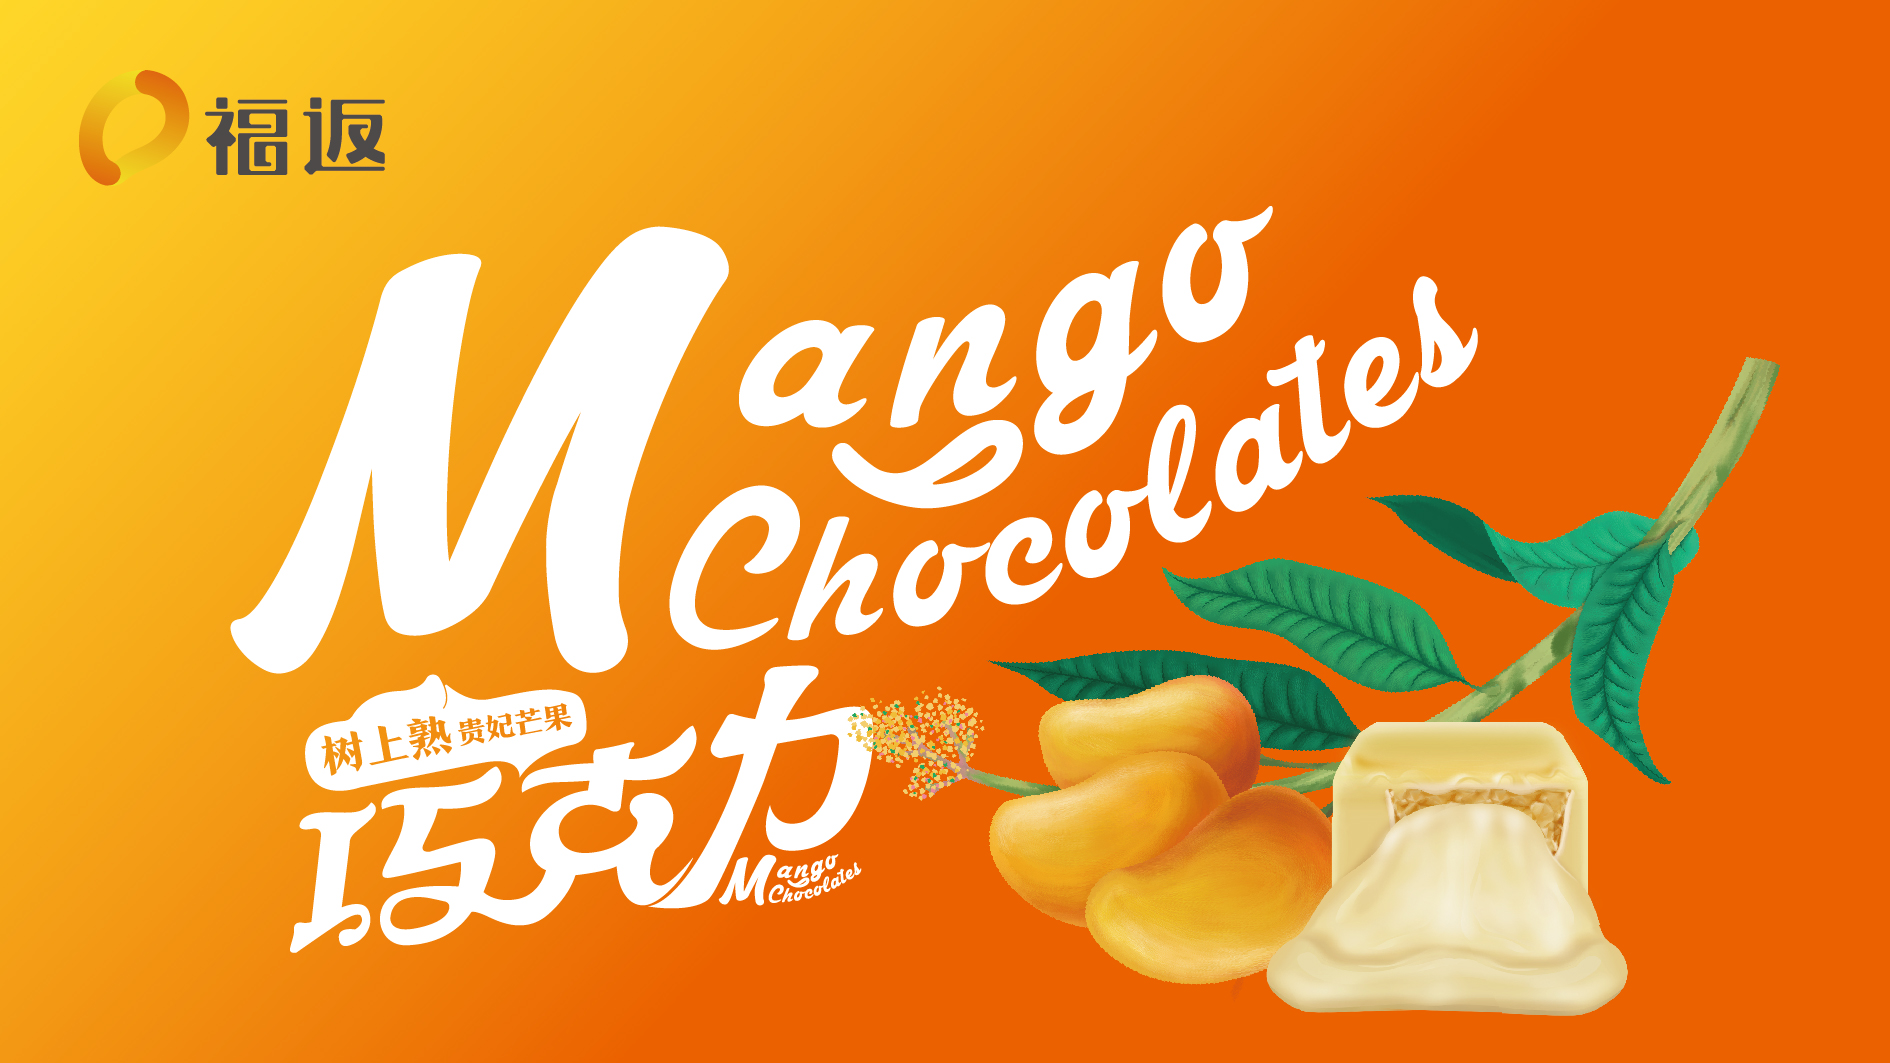 北京福返芒果巧克力品牌形象设计